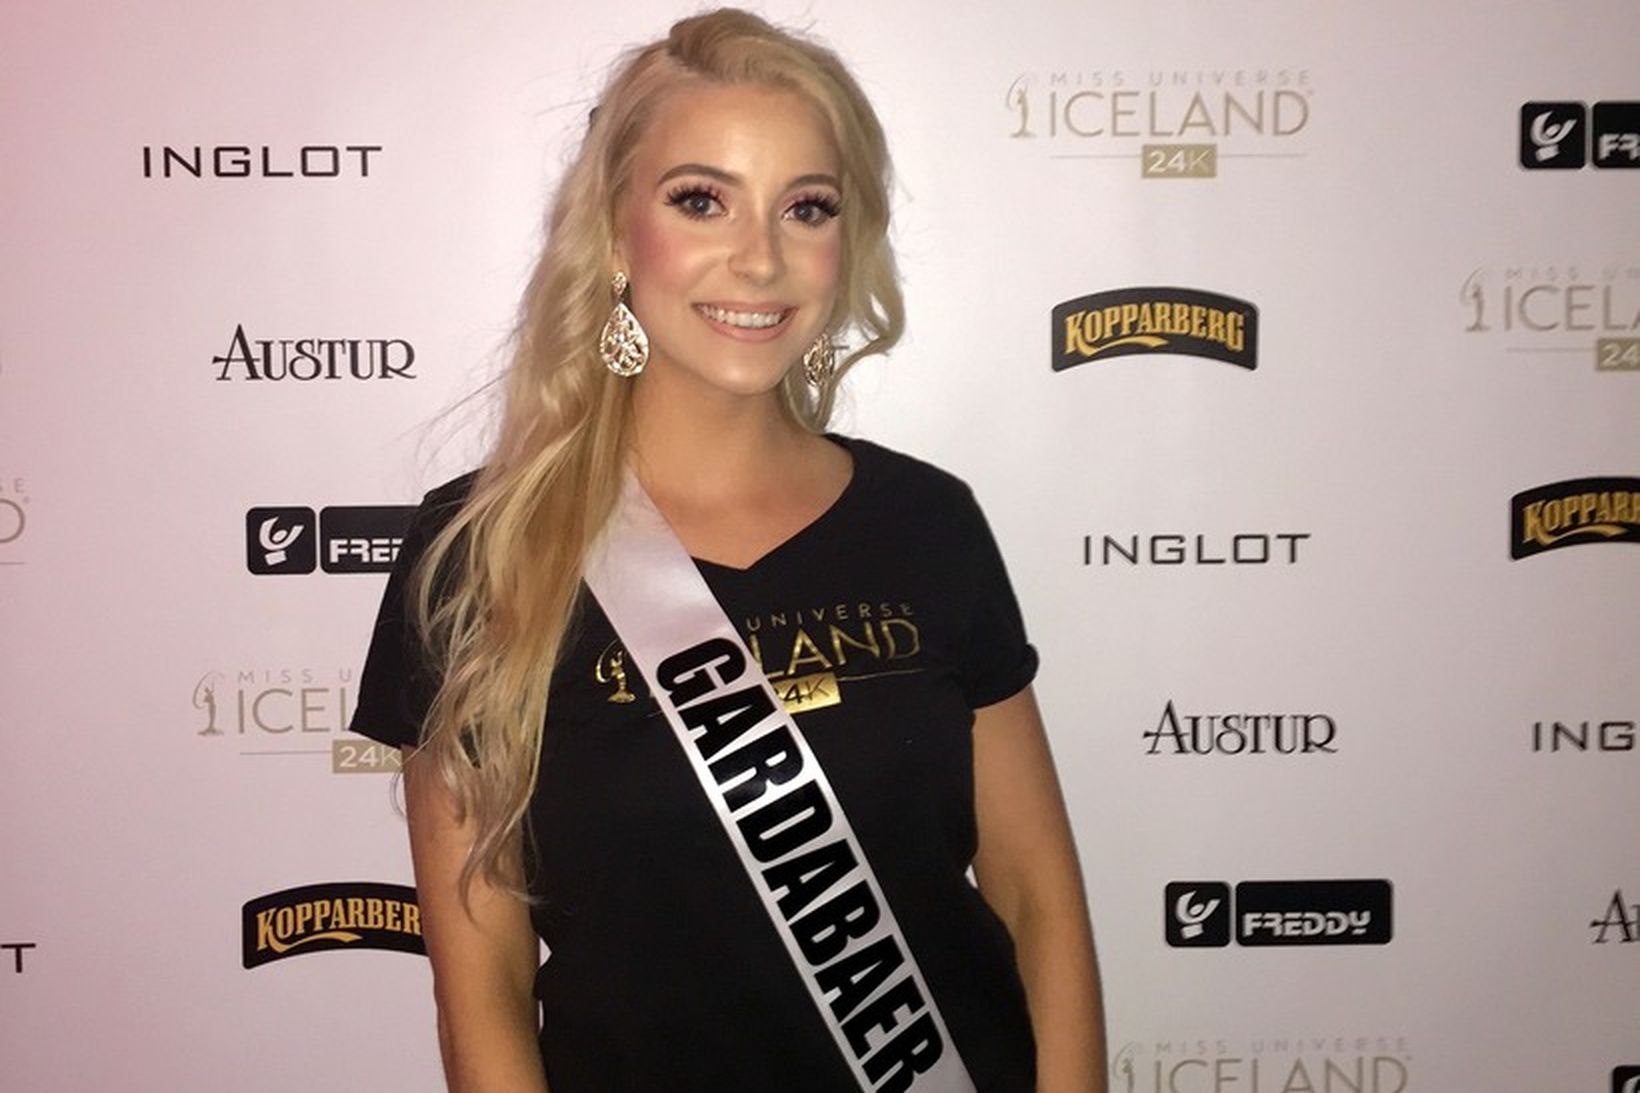 Elísa Gróa Steinþórsdóttir tekur þátt í Miss Universe í september.